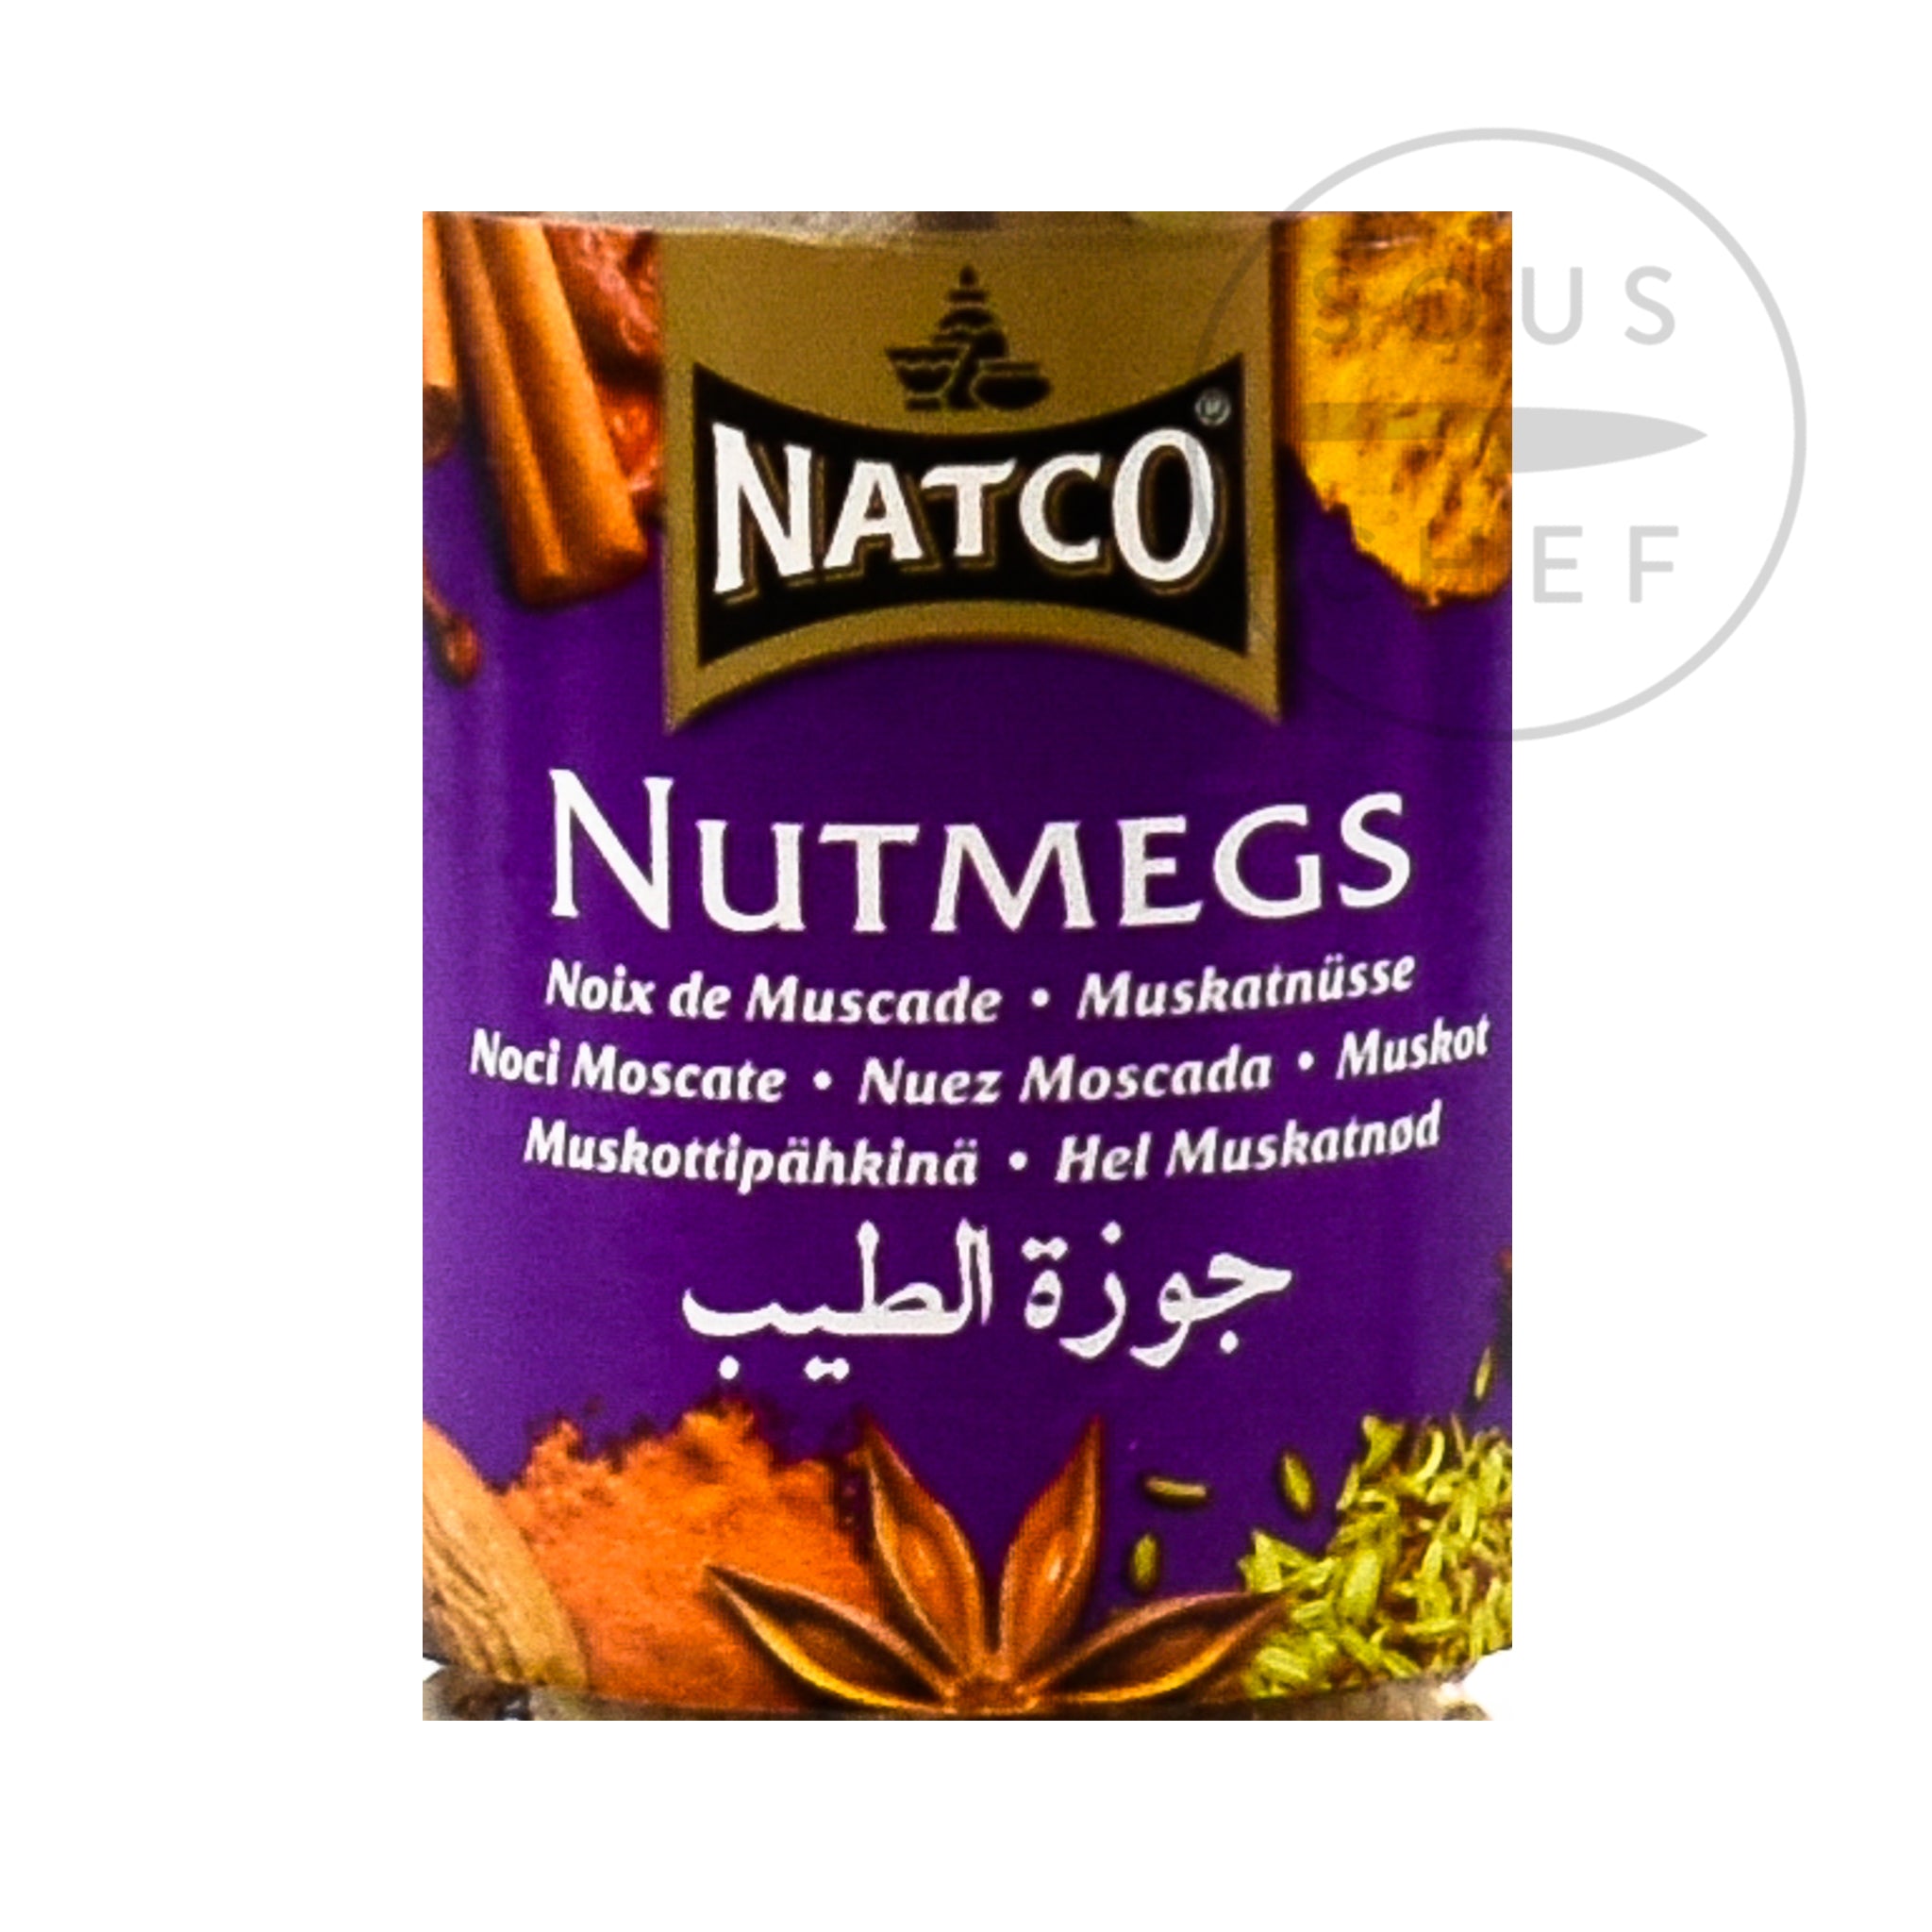 Natco Whole Nutmeg, 100g